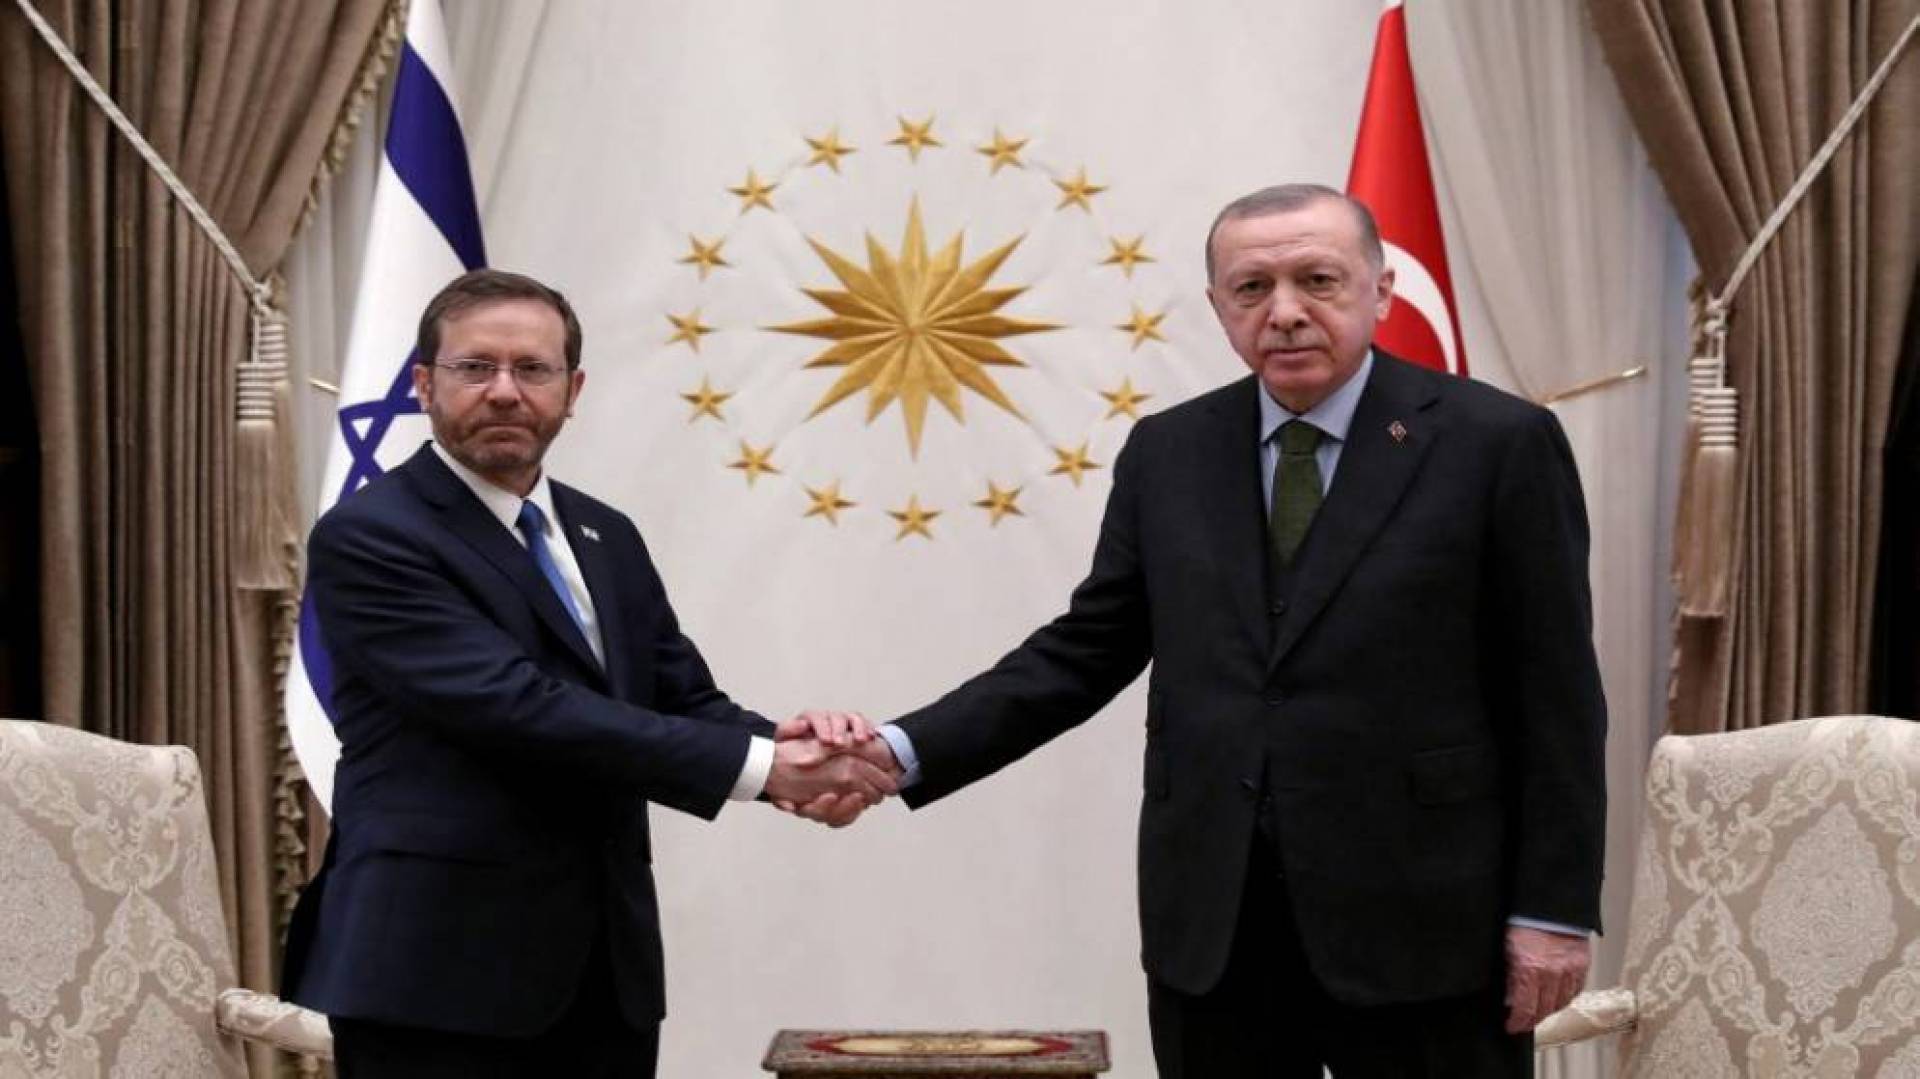 كتب الأستاذ يوسف جابر: لقاء الرئيس التركي رجب أردوغان مع رئيس الكيان الاسرائيلي اسحاق هرتسوغ وقاحة لا نظير لها.